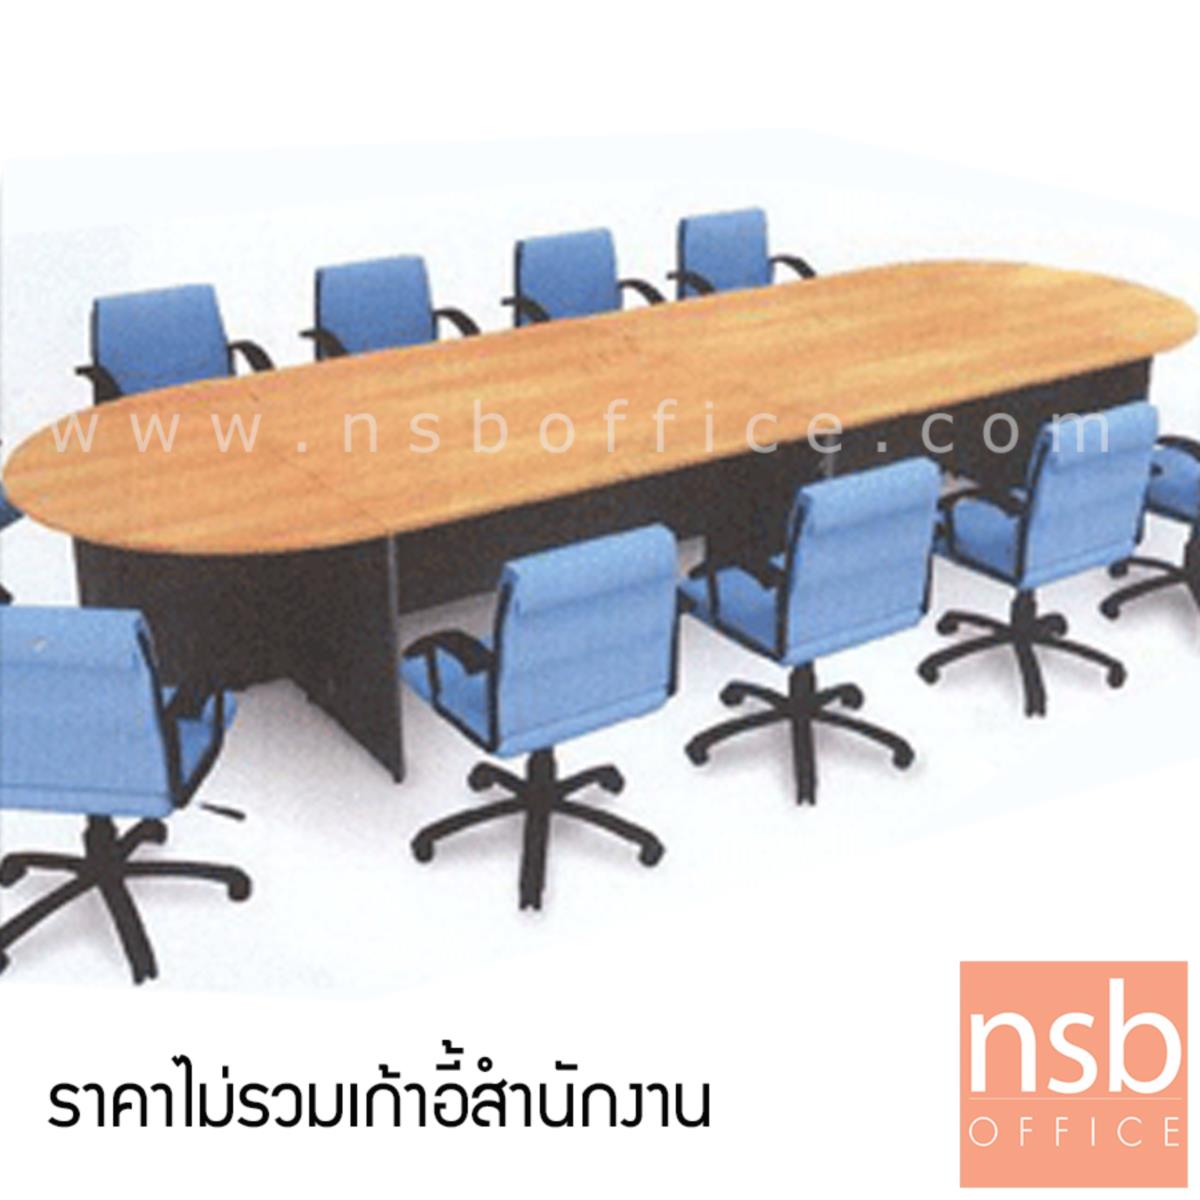 โต๊ะประชุมหัวโค้ง ทรงแคปซูล รุ่น Beymer 10 ,14 ที่นั่ง ขนาดรวม 270W ,420W cm.   